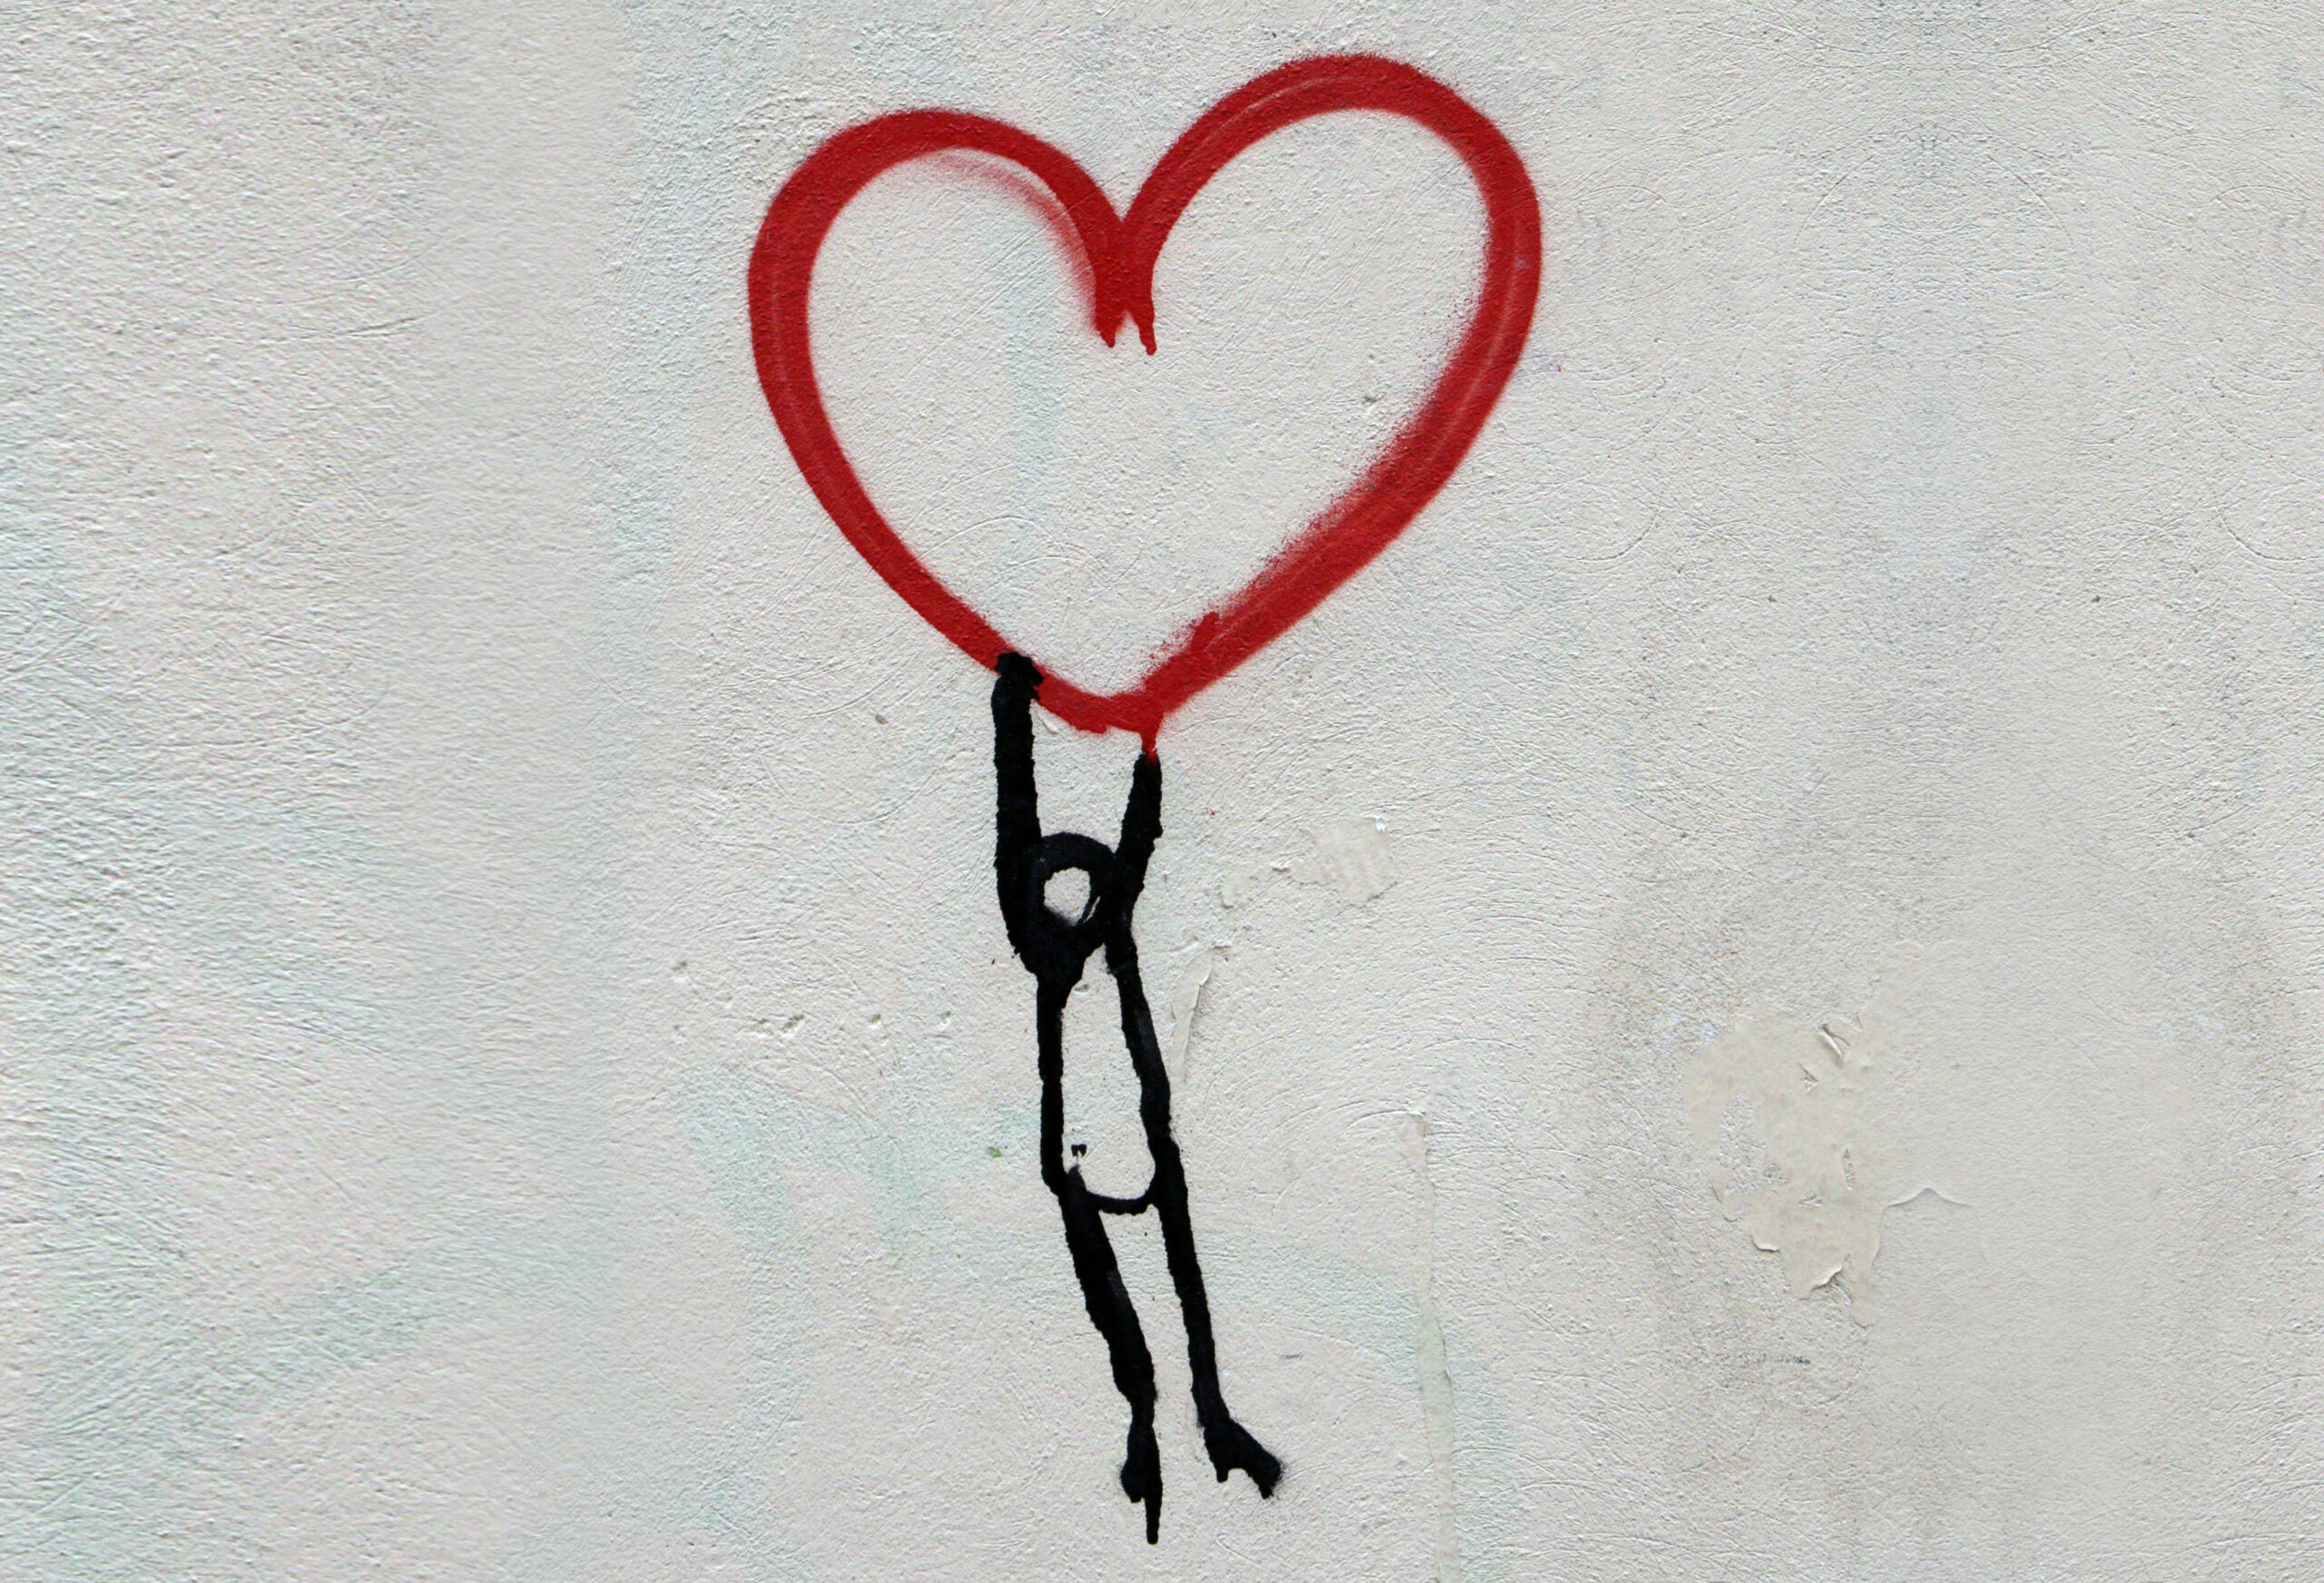 Beitragsbild zu Verschwörungserzählungen: Wandgrafitti: Figur, die rotes Herz hochhält.